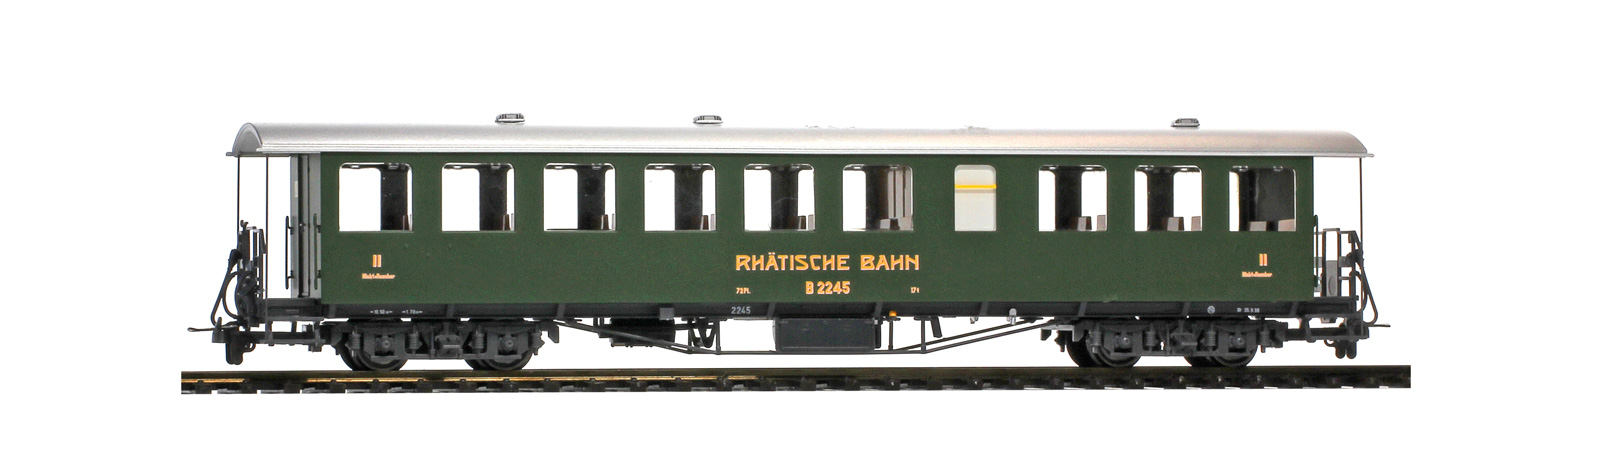 RhB B2247 Dampfzug 4-achser 2. Klasse, Nostalgie-Plattformwagen, grün